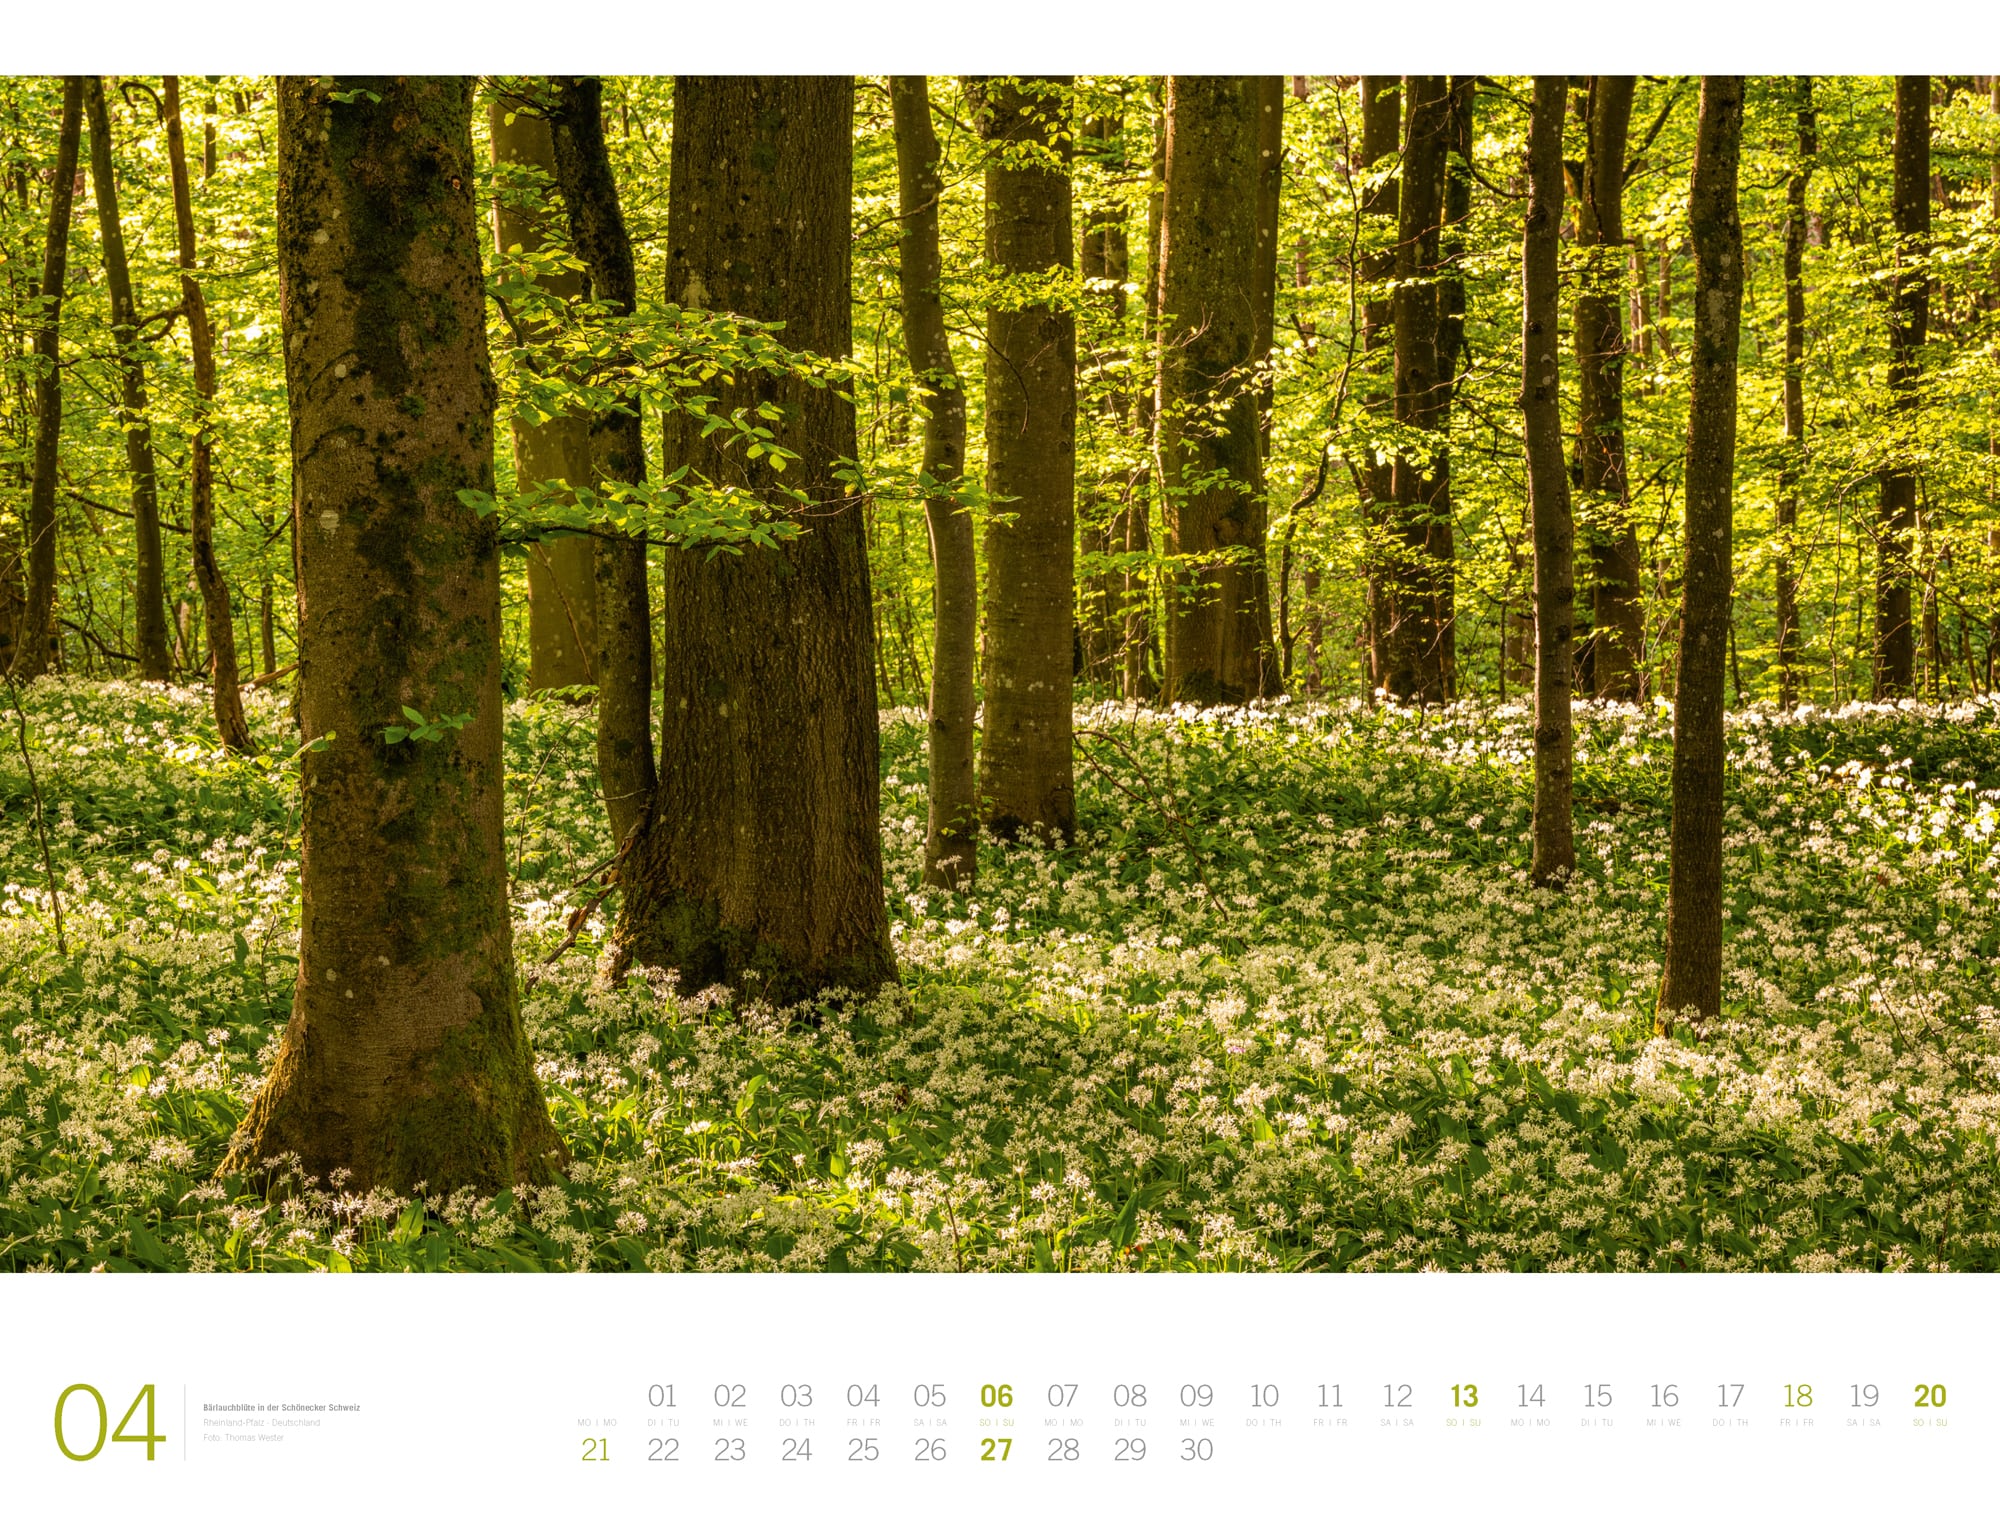 Ackermann Calendar Forest - Gallery 2025 - Inside View 04